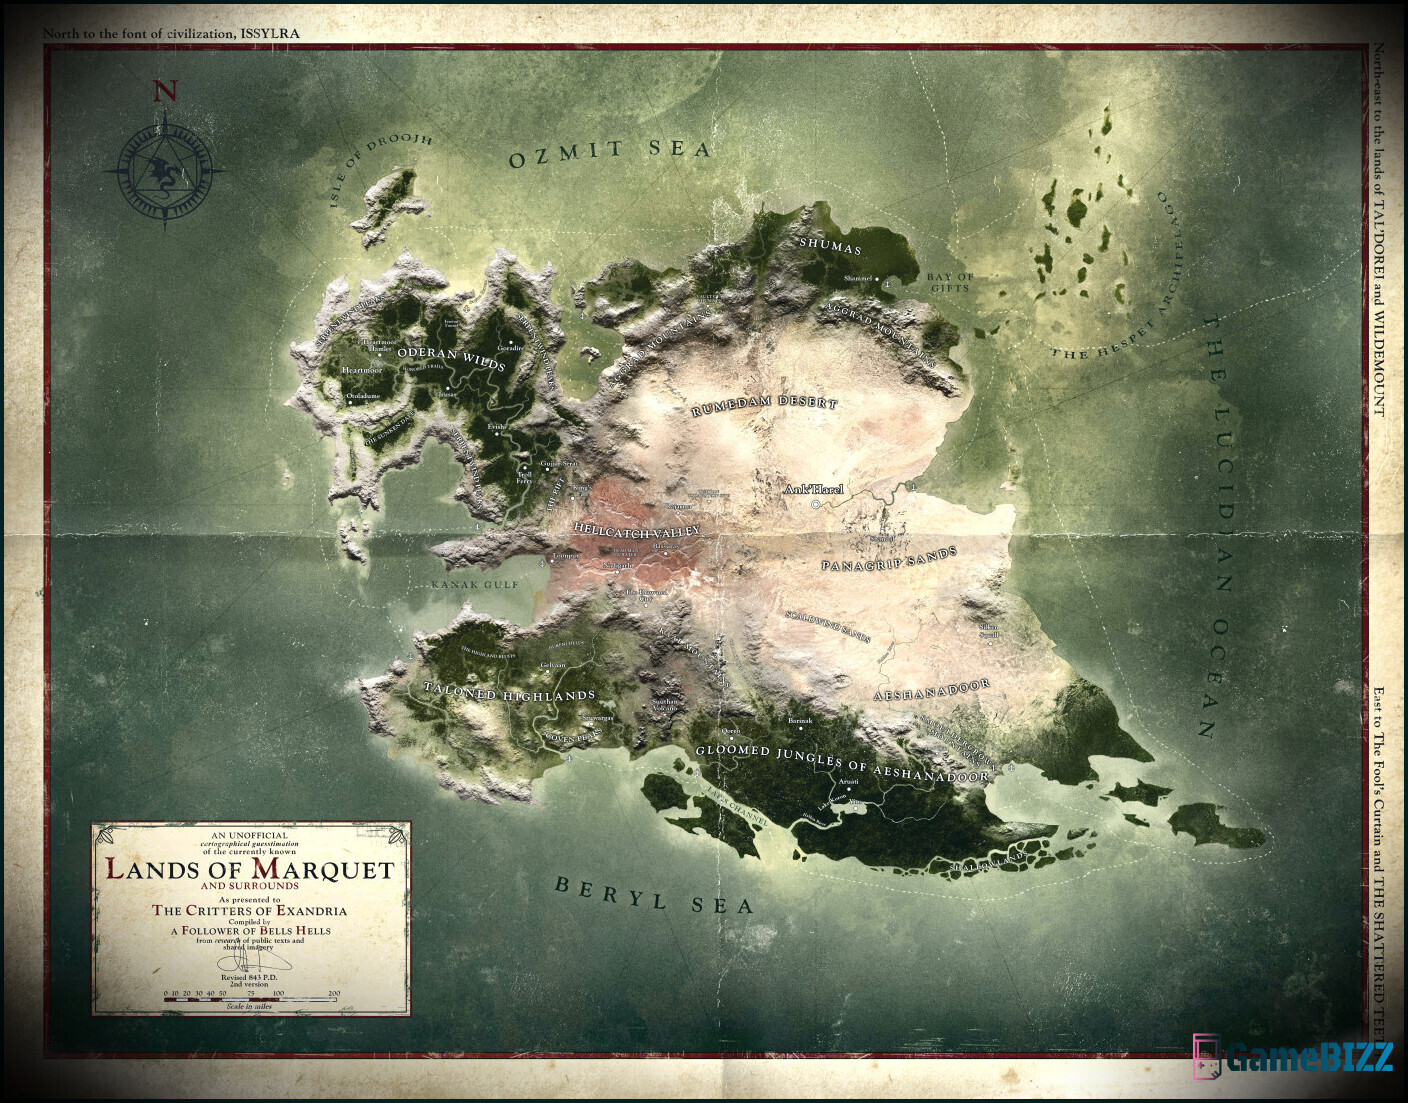 Final Fantasy 16 Map Text wurde übersetzt, enthüllt mehr über Valisthea